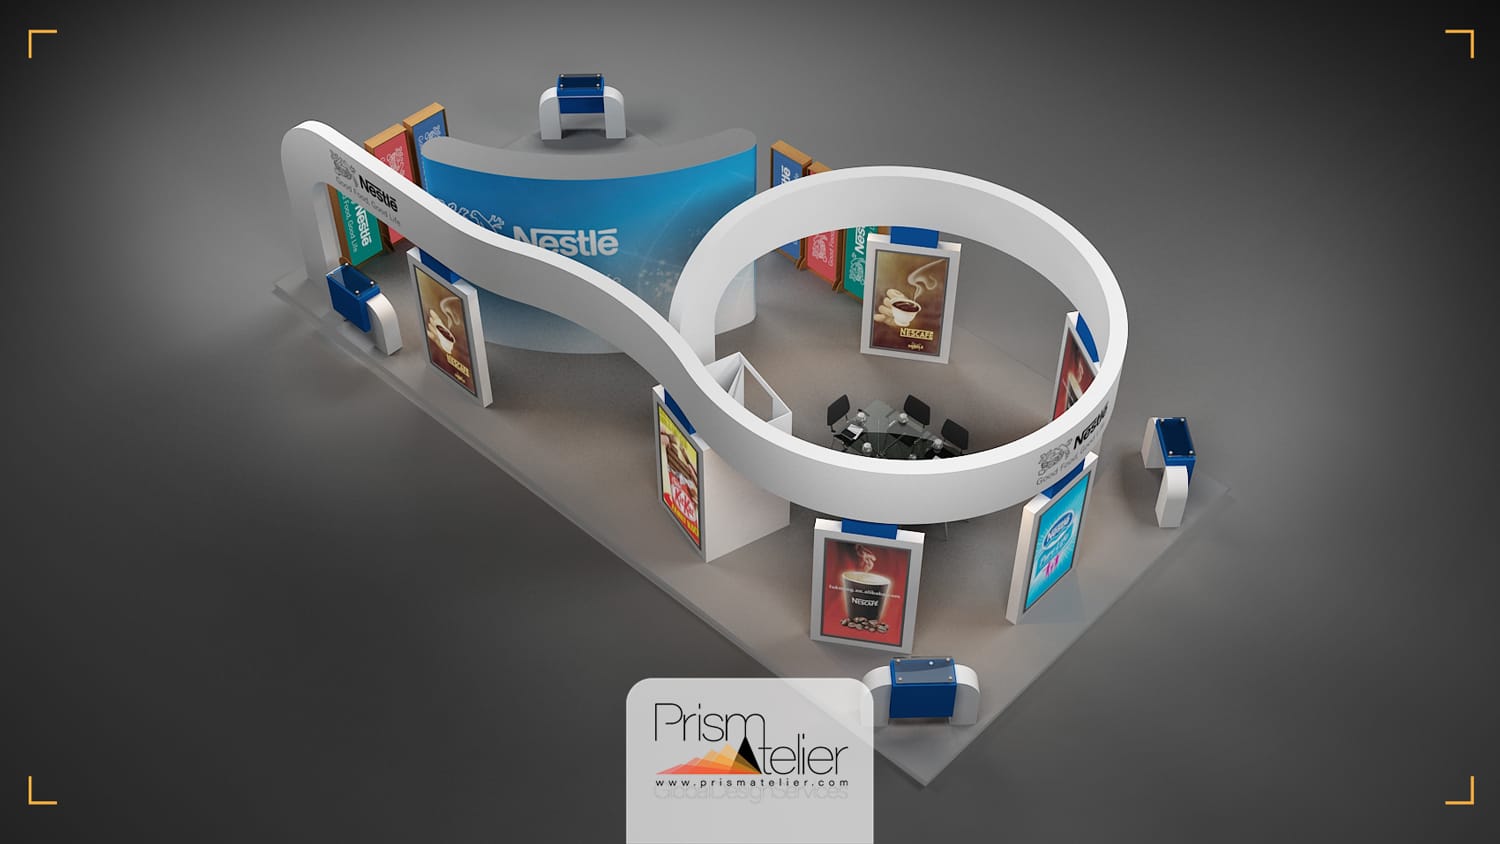 یک تصویر طراحی شده بصورت سه بعدی از دکوراسیون یک غرفه با نام شرکت نستله